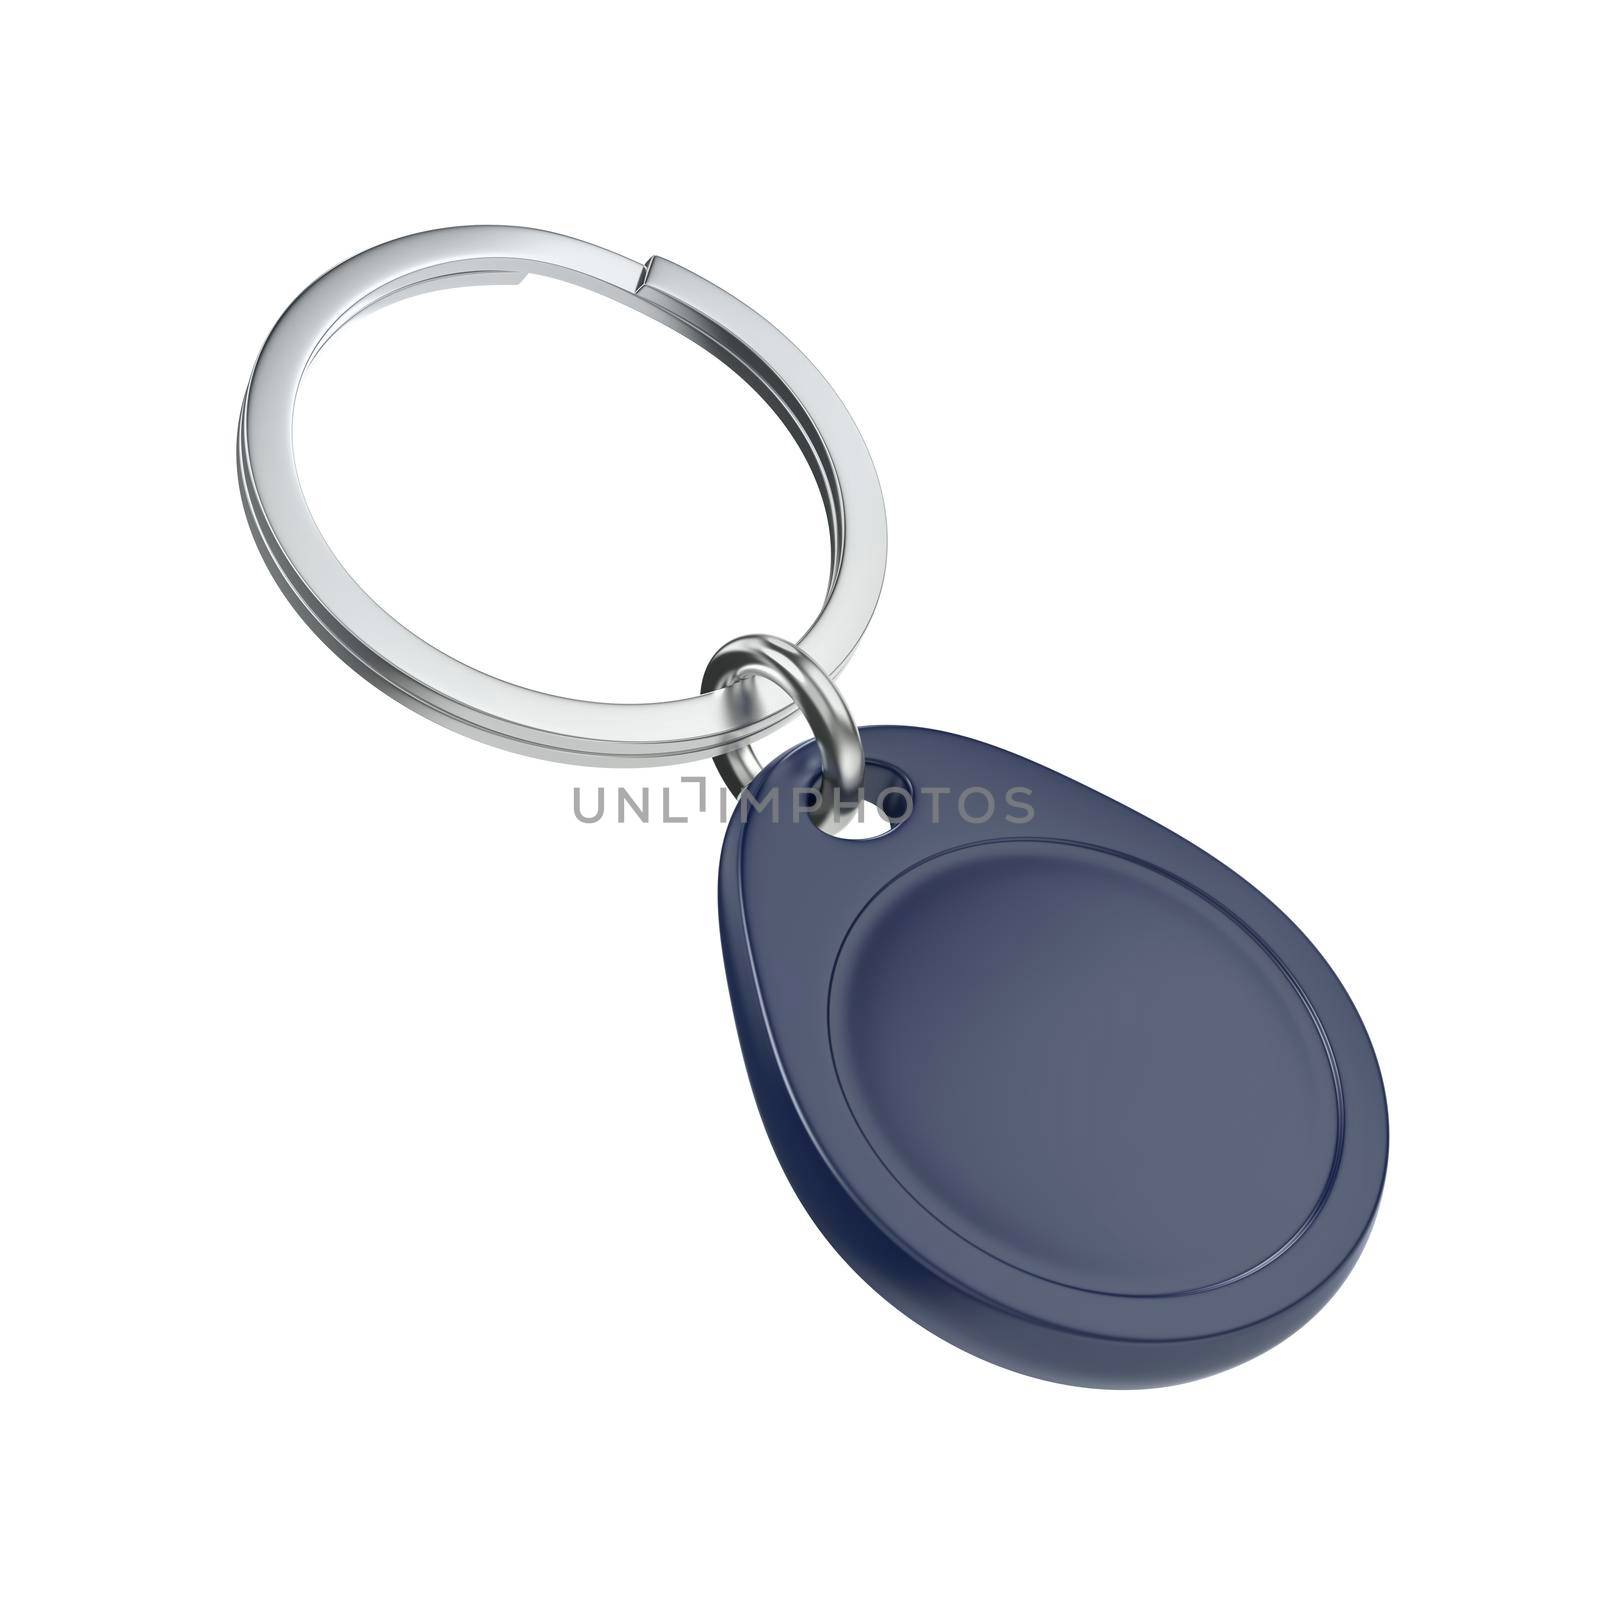 Blue RFID key fob isolated on white background